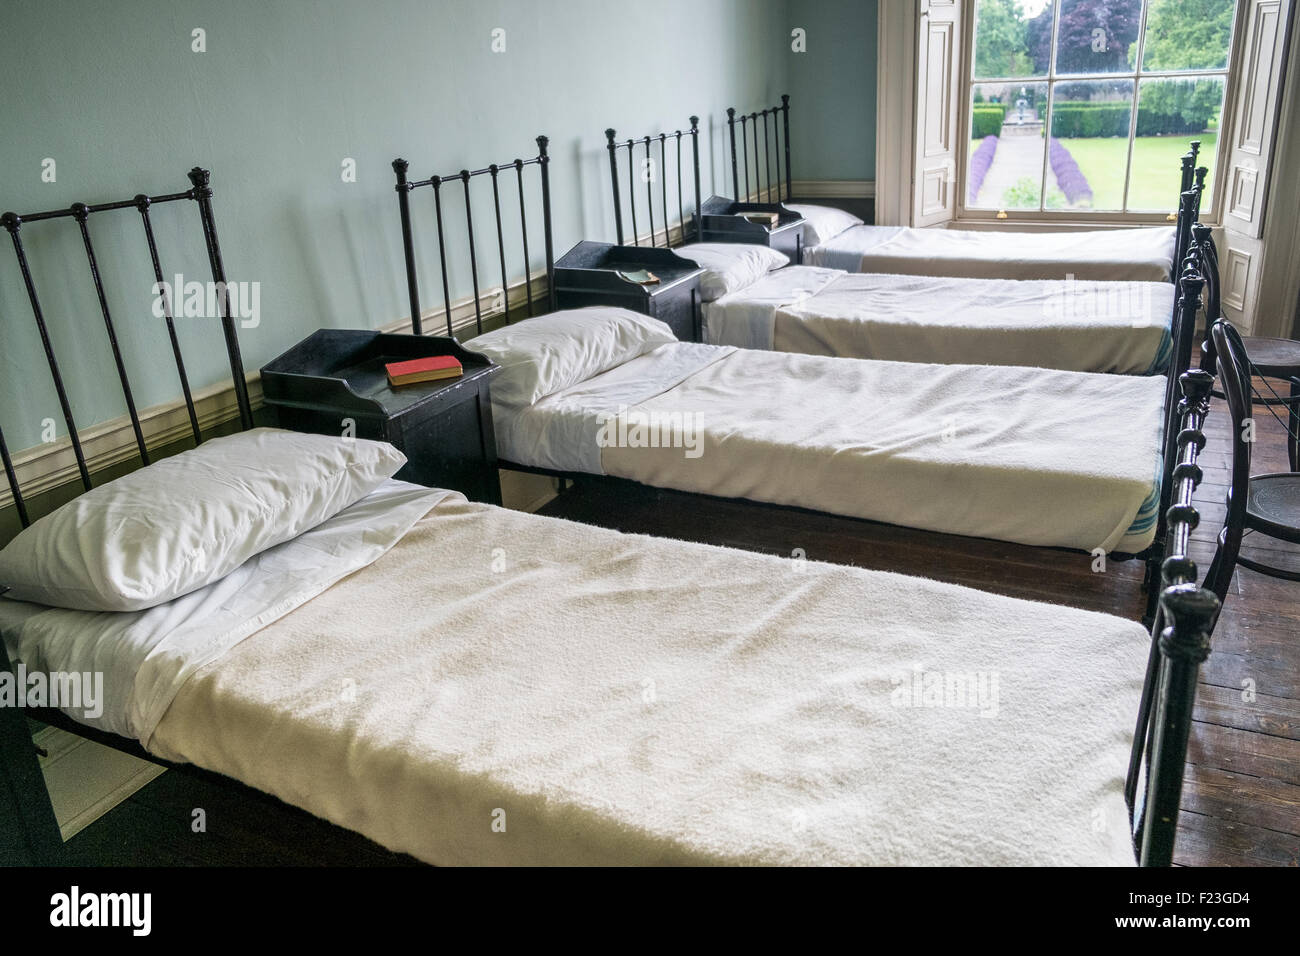 regular uniform row of beds in dormitory bedroom Stock Photo